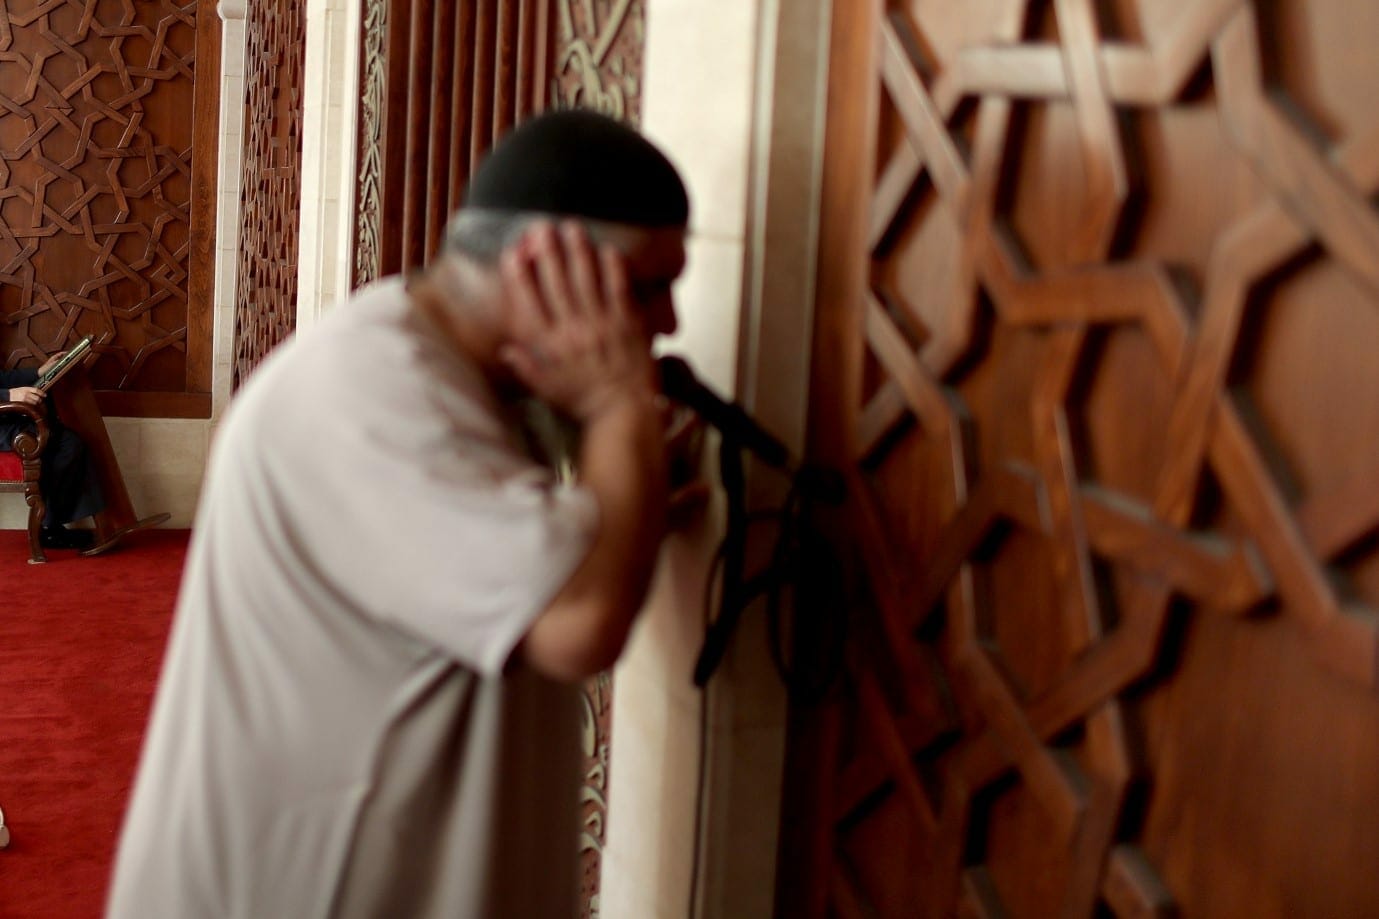 شاب يمني يقتل مؤذن المسجد بعد صلاة الفجر طعناً وبإلقاء حجارة على رأسه watanserb.com